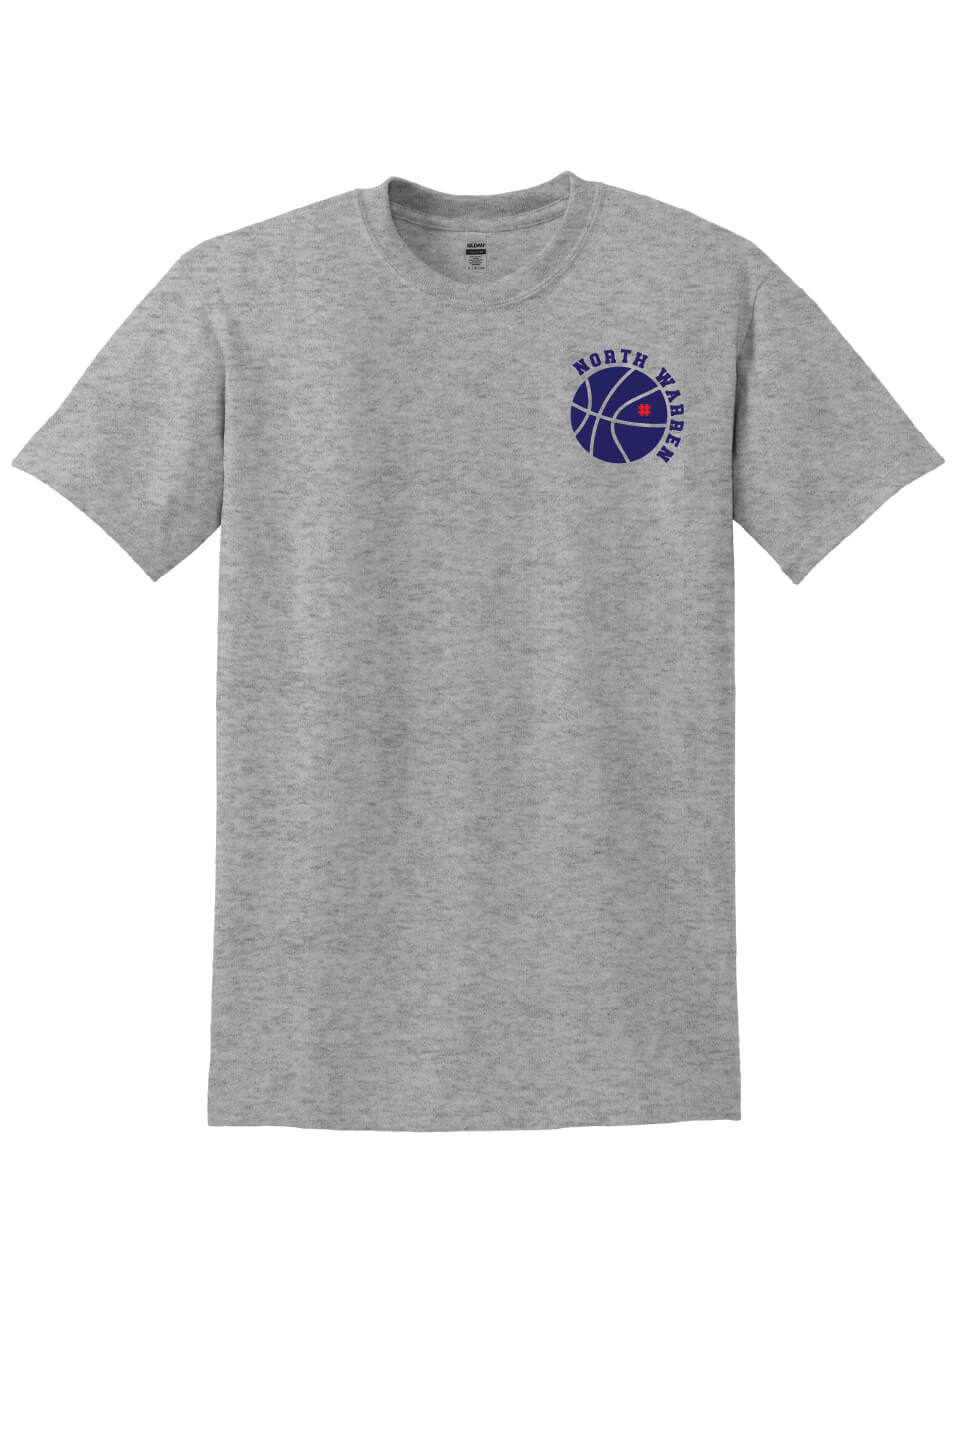 North Warren Basketball Short Sleeve T-Shirt gray